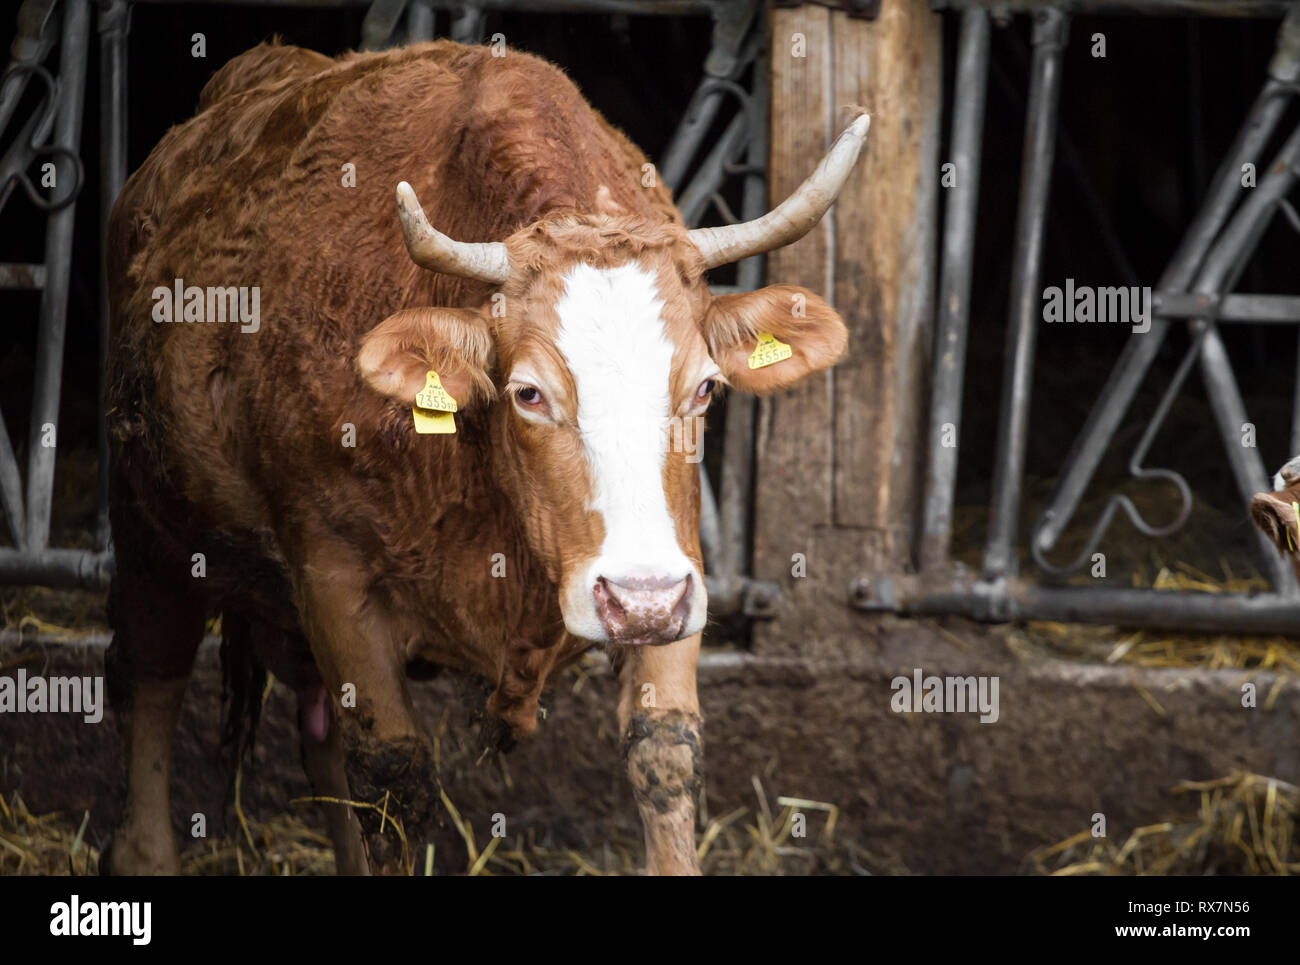 Free Range ganado de cría de vacas nodrizas Foto de stock